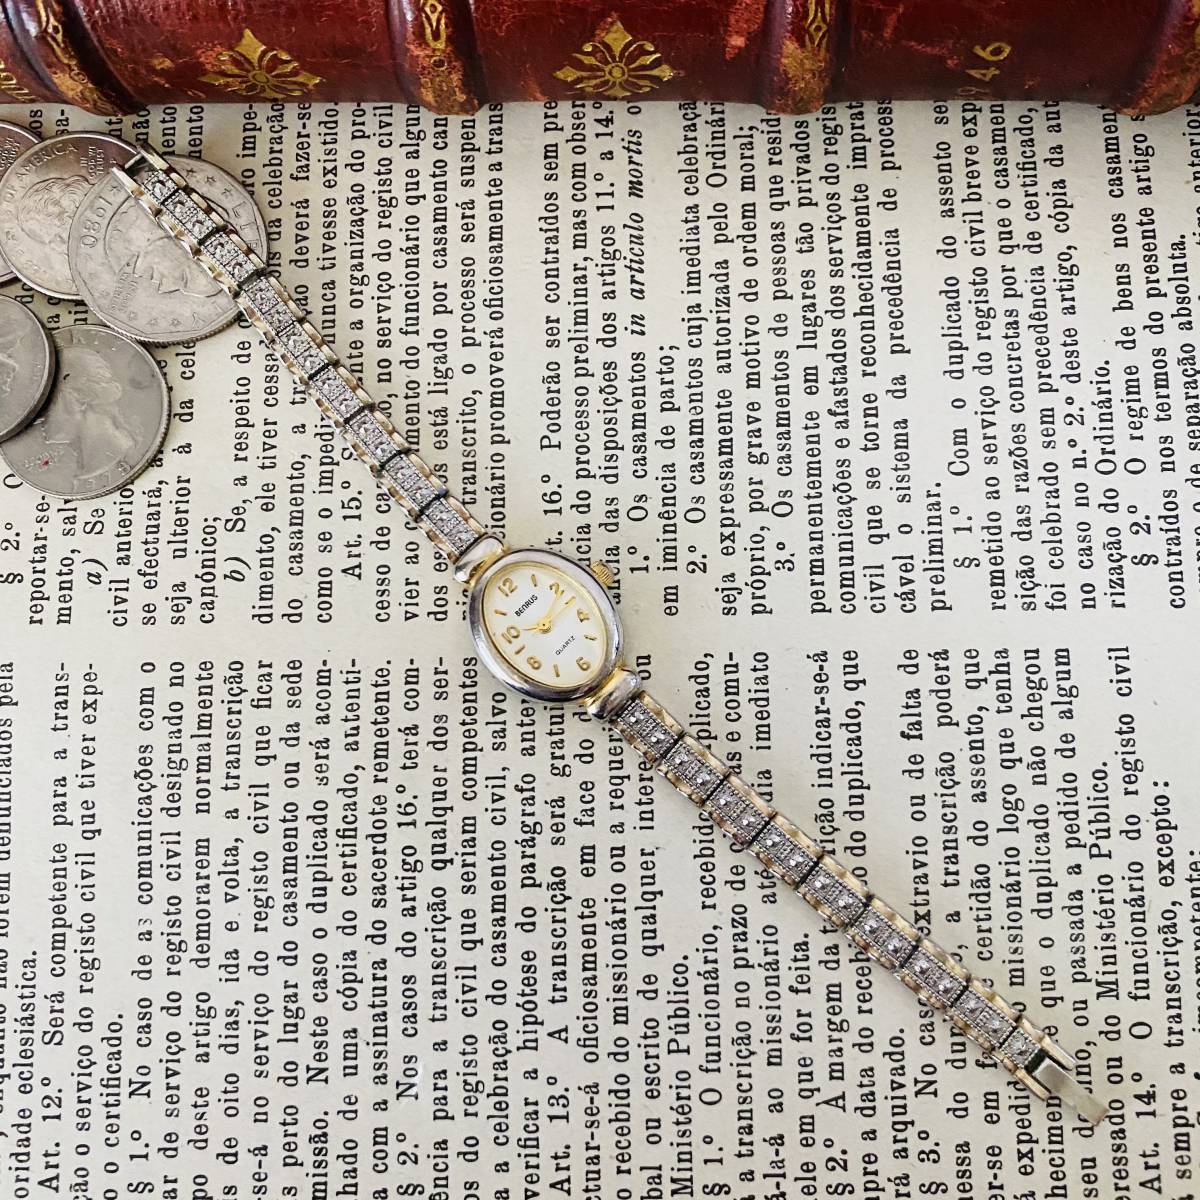 [ высококлассный часы Ben las]Benrus кварц наручные часы женский Vintage браслет коктейль часы crystal есть перевод 